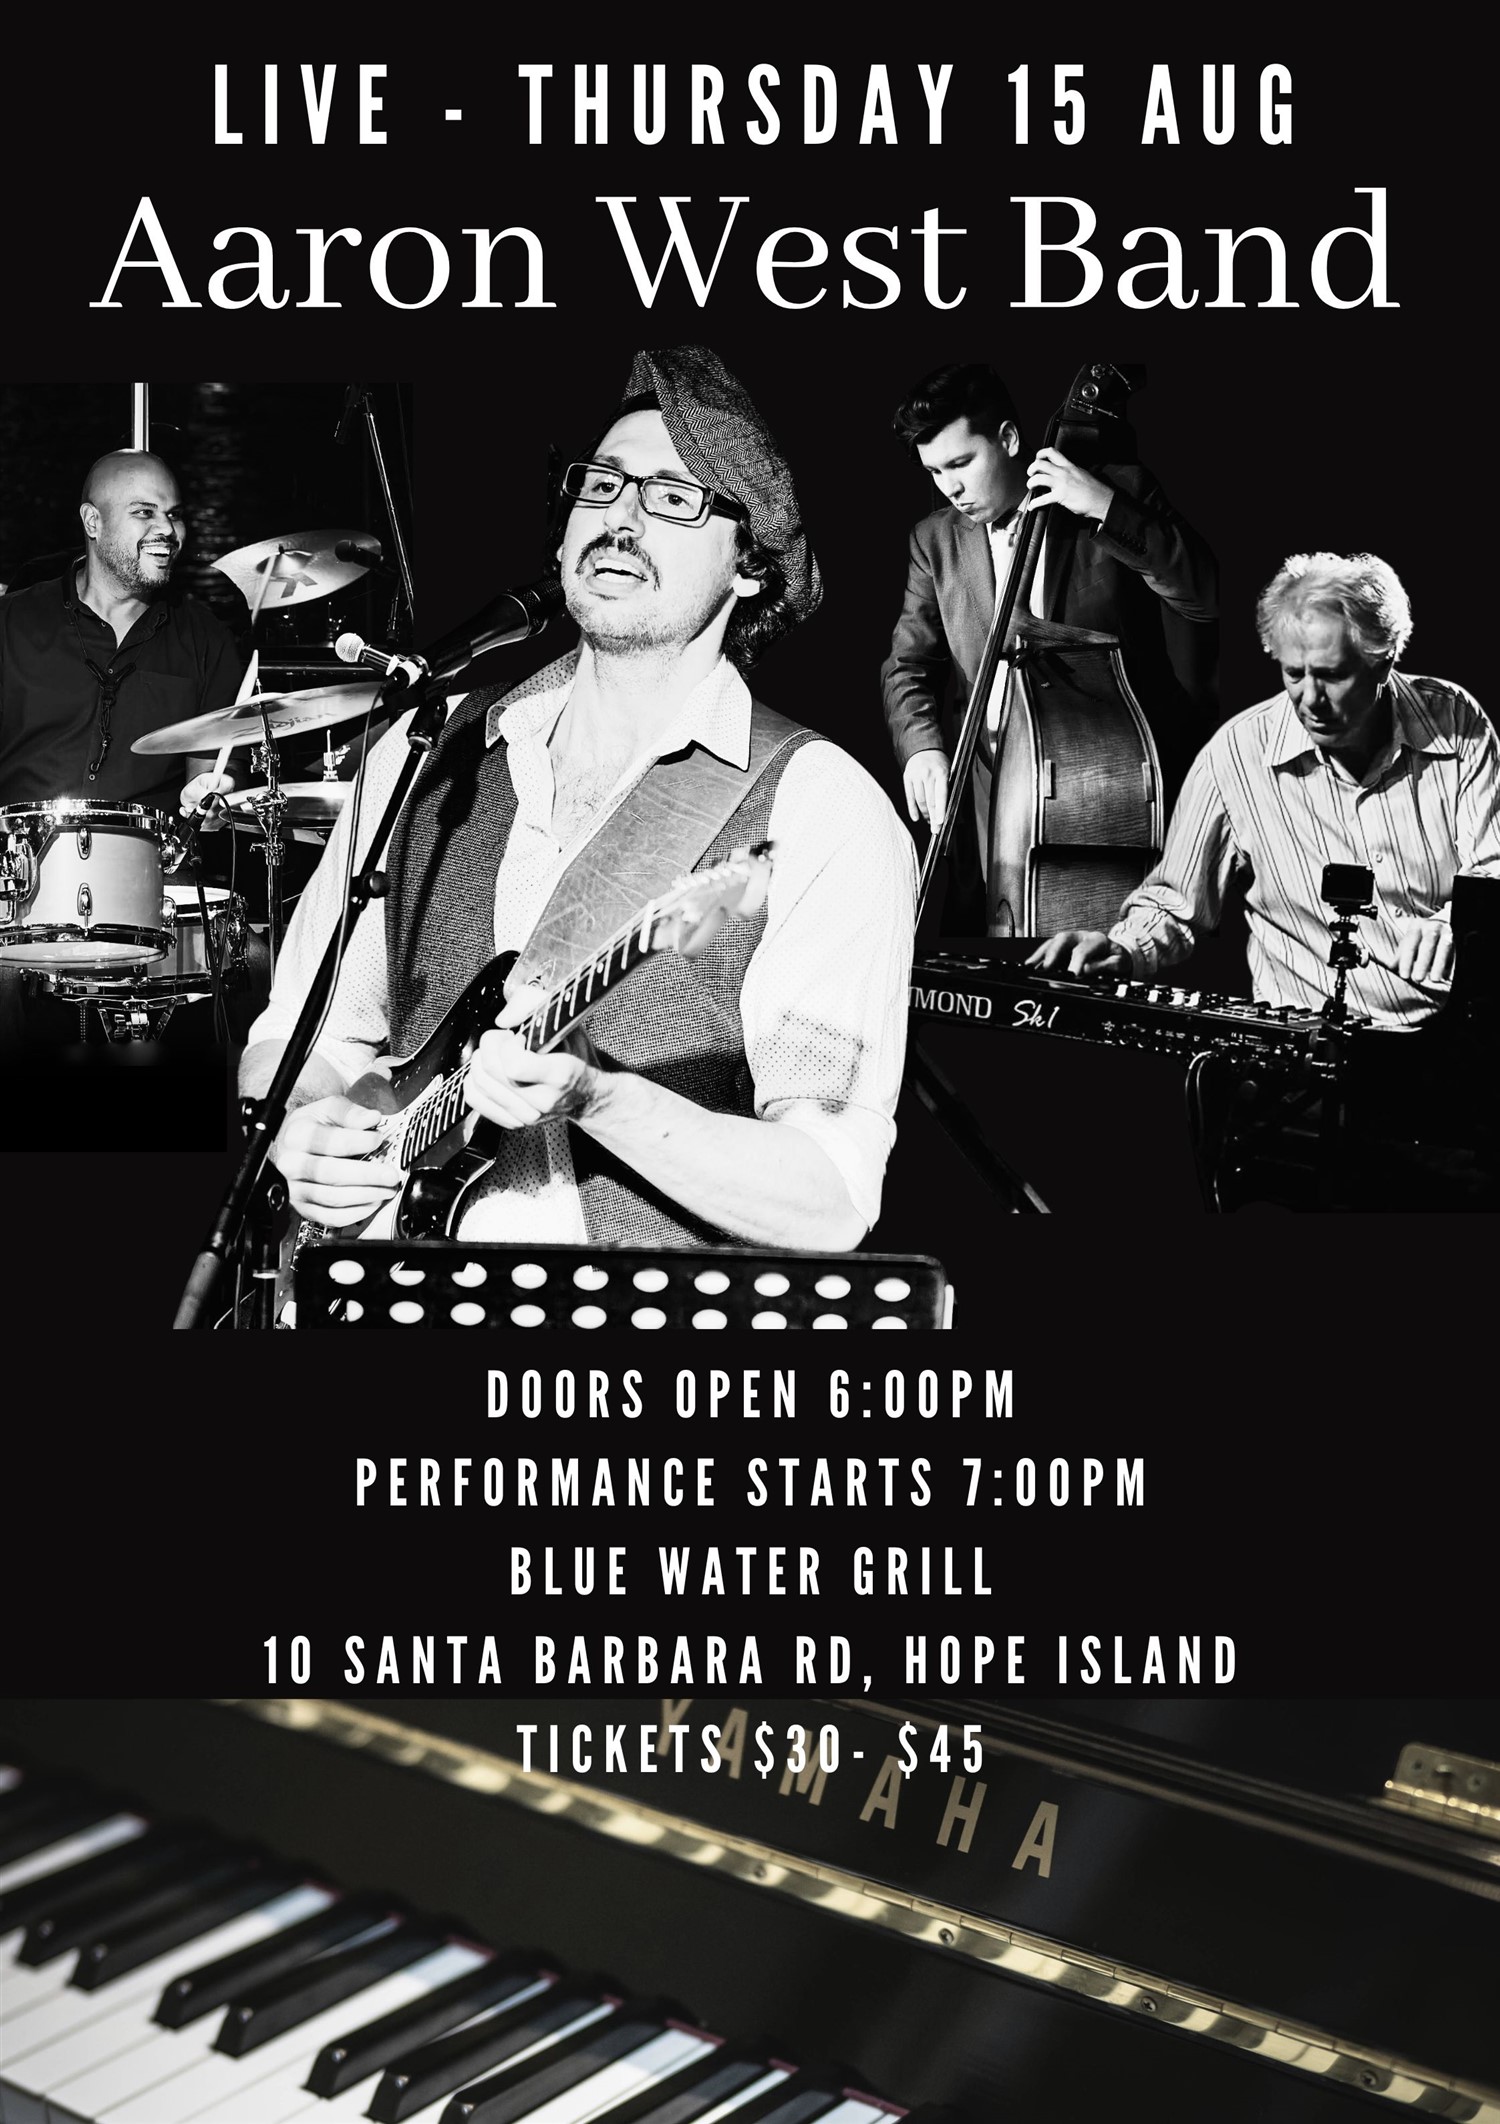 Aaron West Band  on août 15, 18:00@Hope Island Jazz - Blue Water Grill - Achetez des billets et obtenez des informations surHope Island Jazz hopeislandjazz.com.au